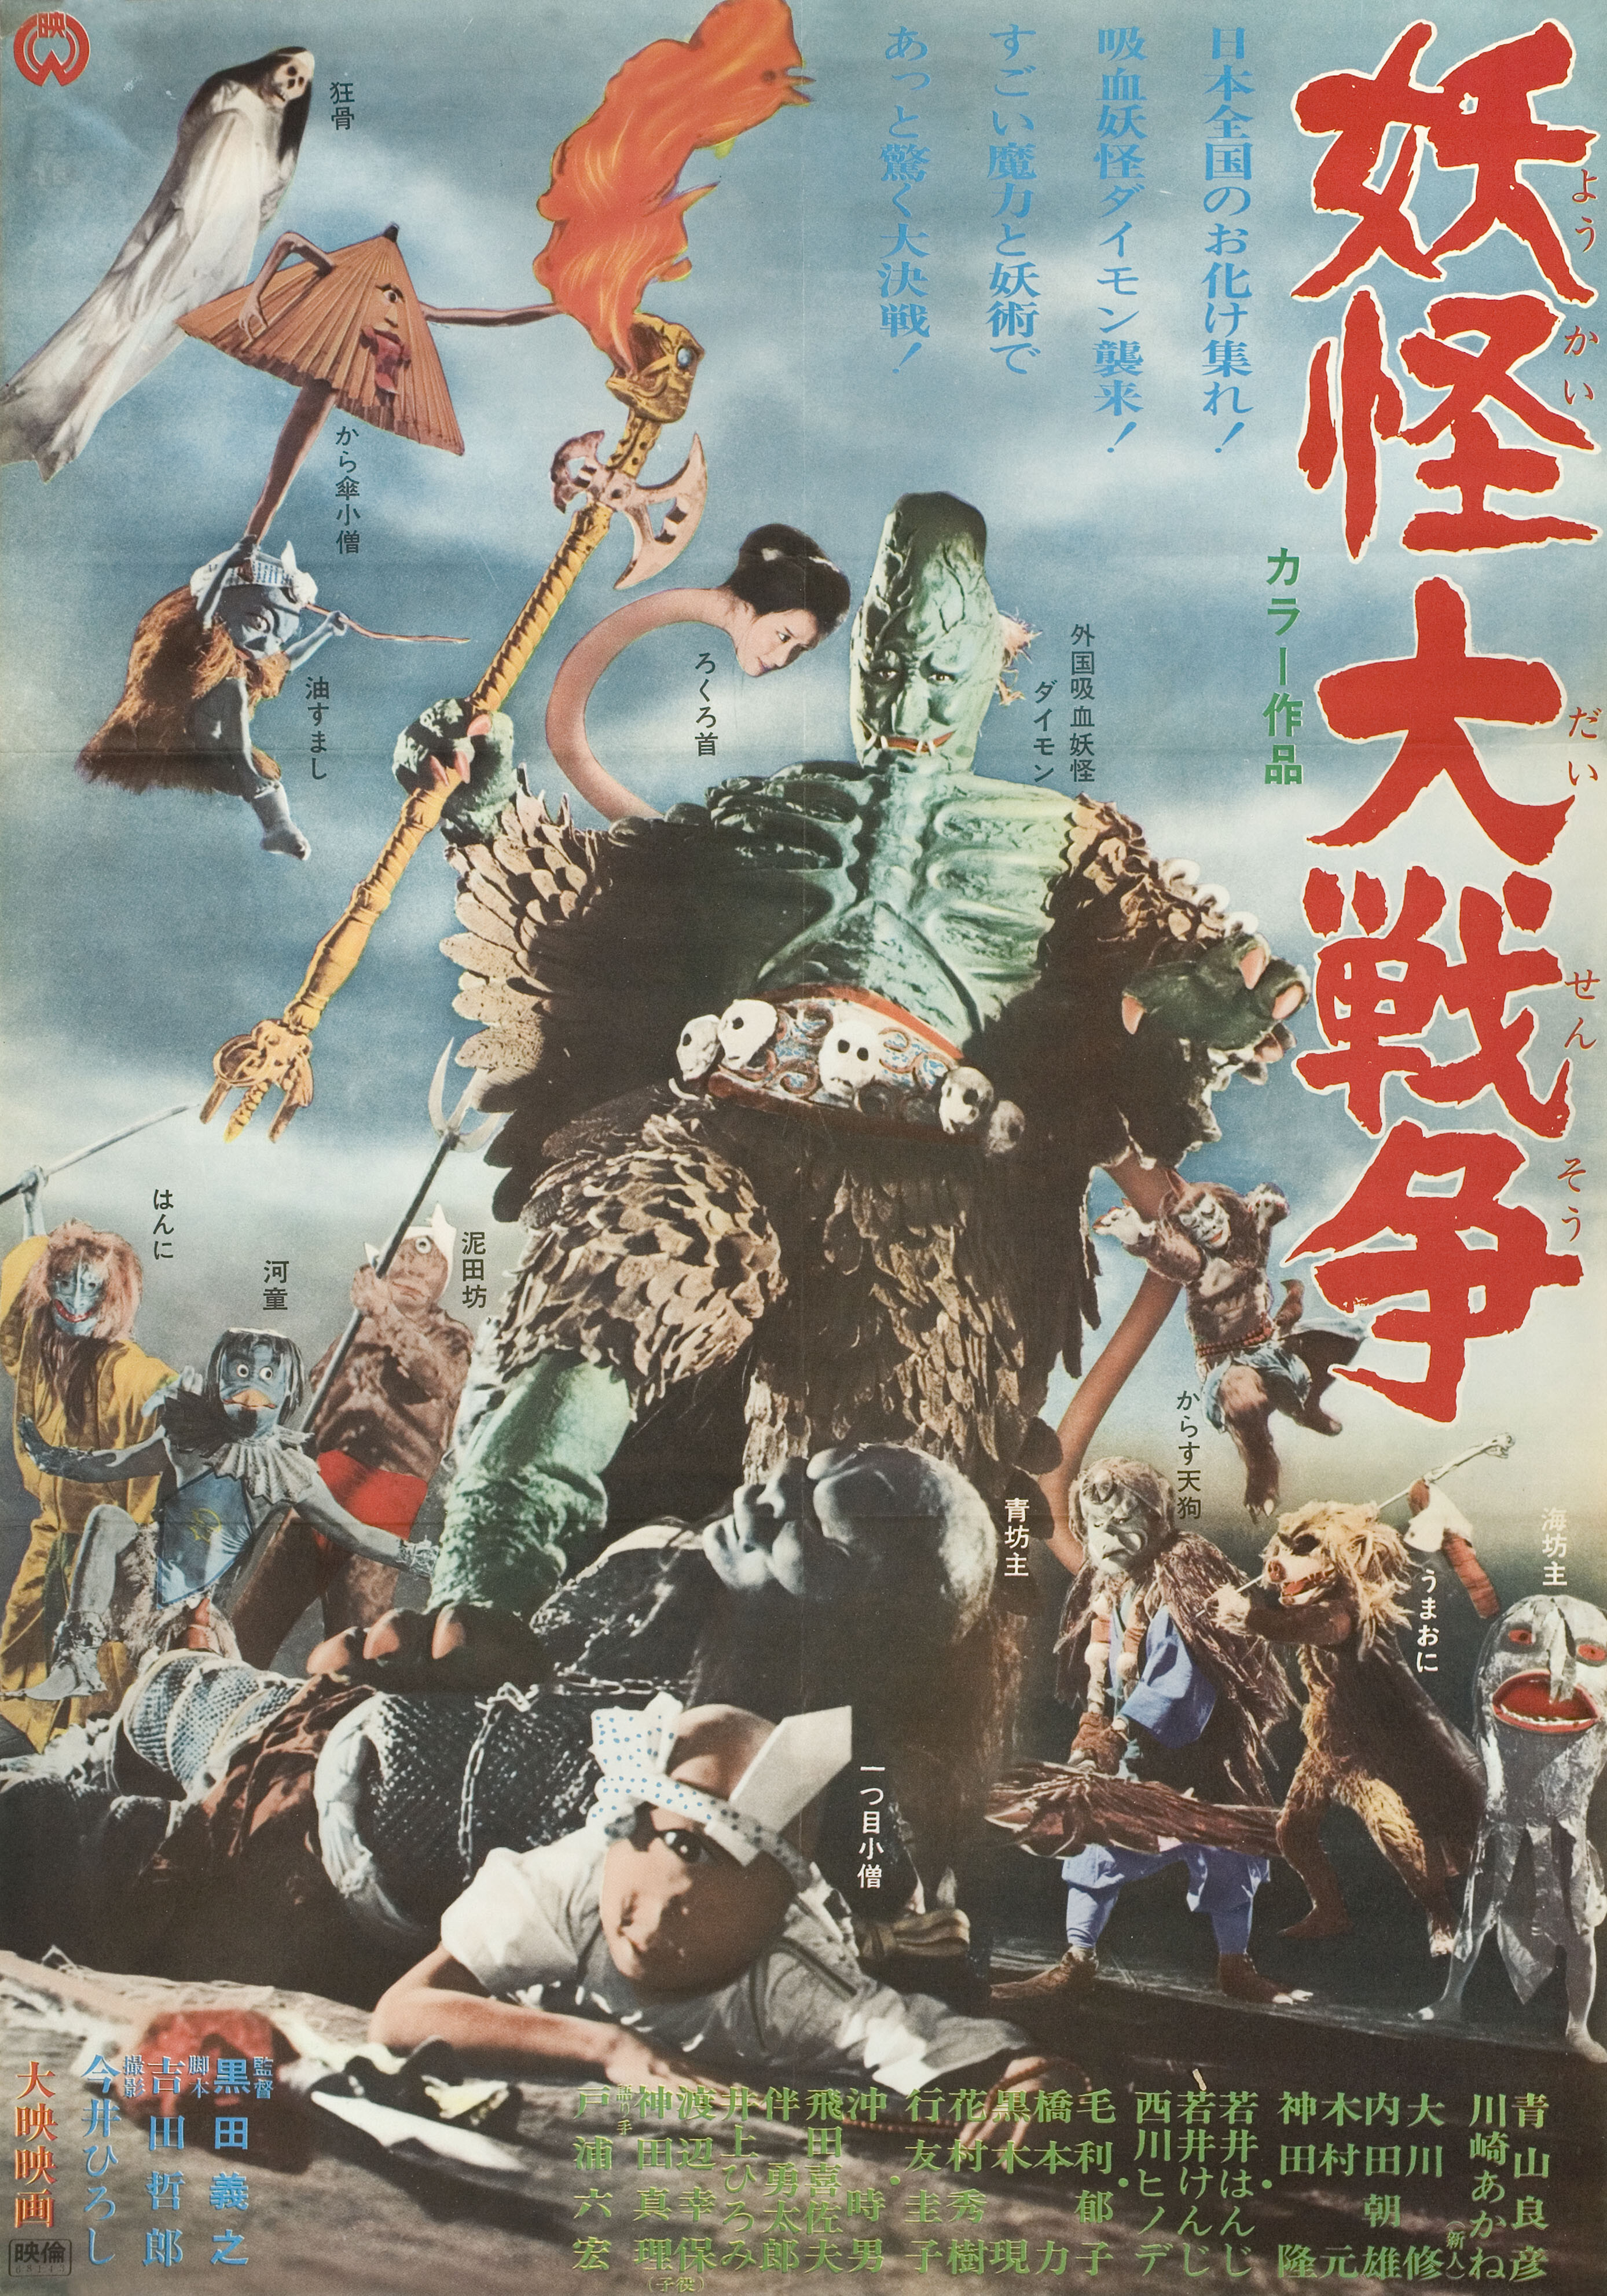 100 монстров (100 Monsters, 1968), режиссёр Кимиеси Ясуда, японский постер к фильму (психоделическое искусство, 1968 год)